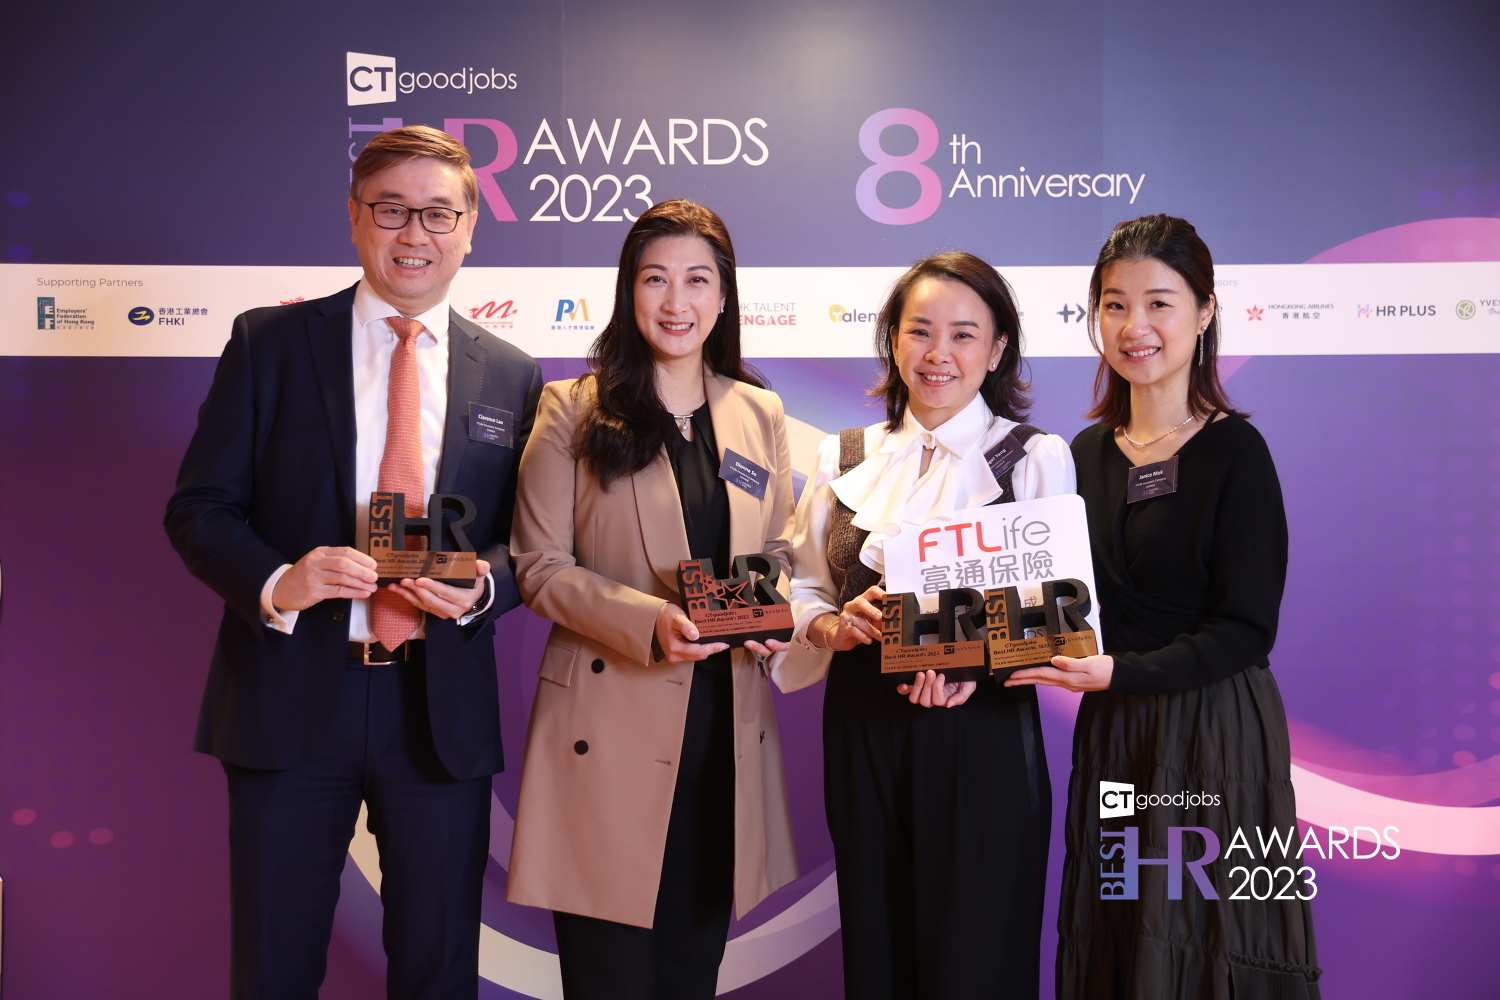 FTLife won three awards at Best HR Awards 2023